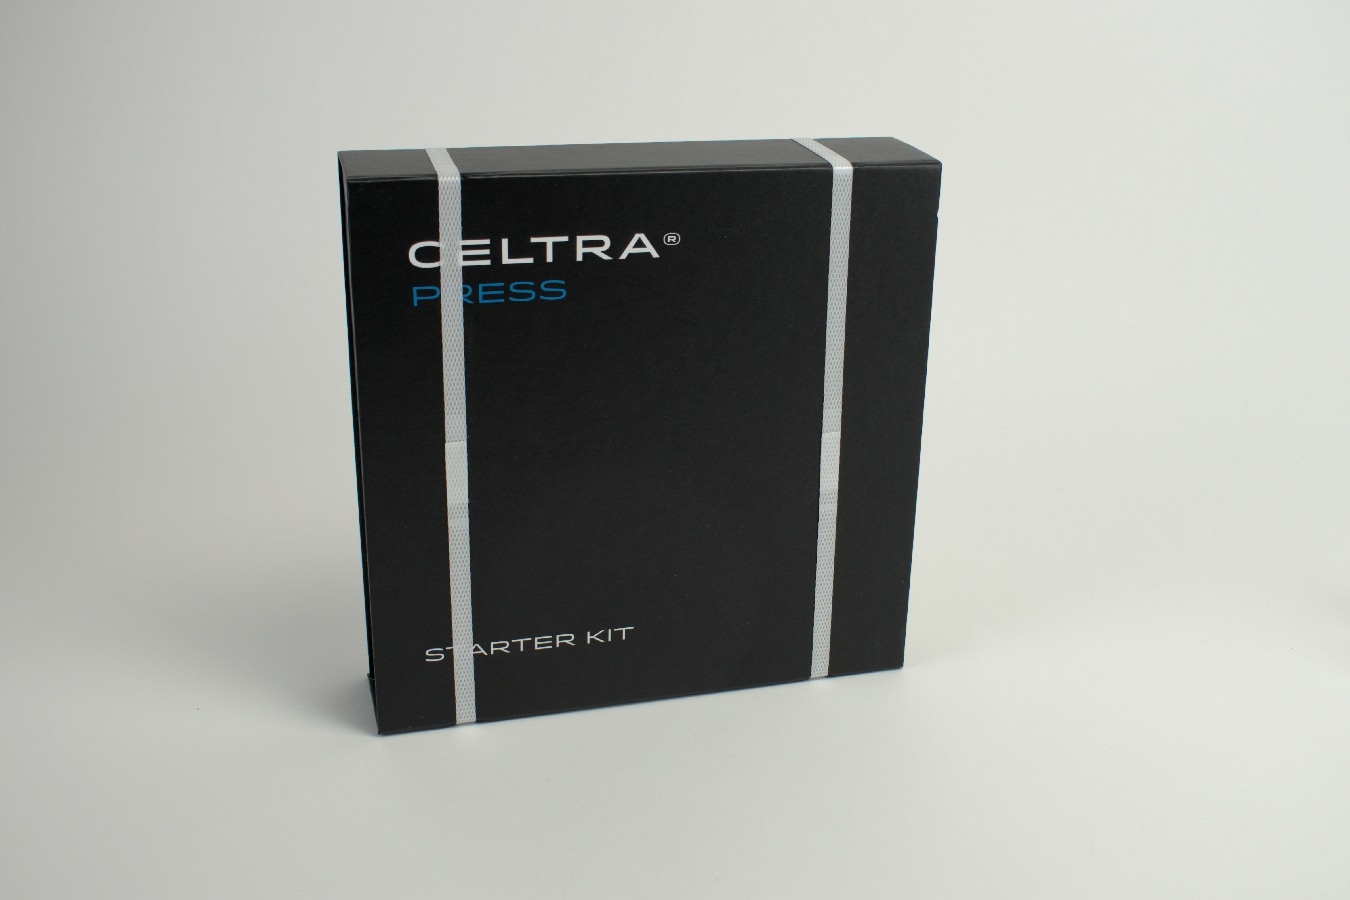 Celtra Press Starter Kit